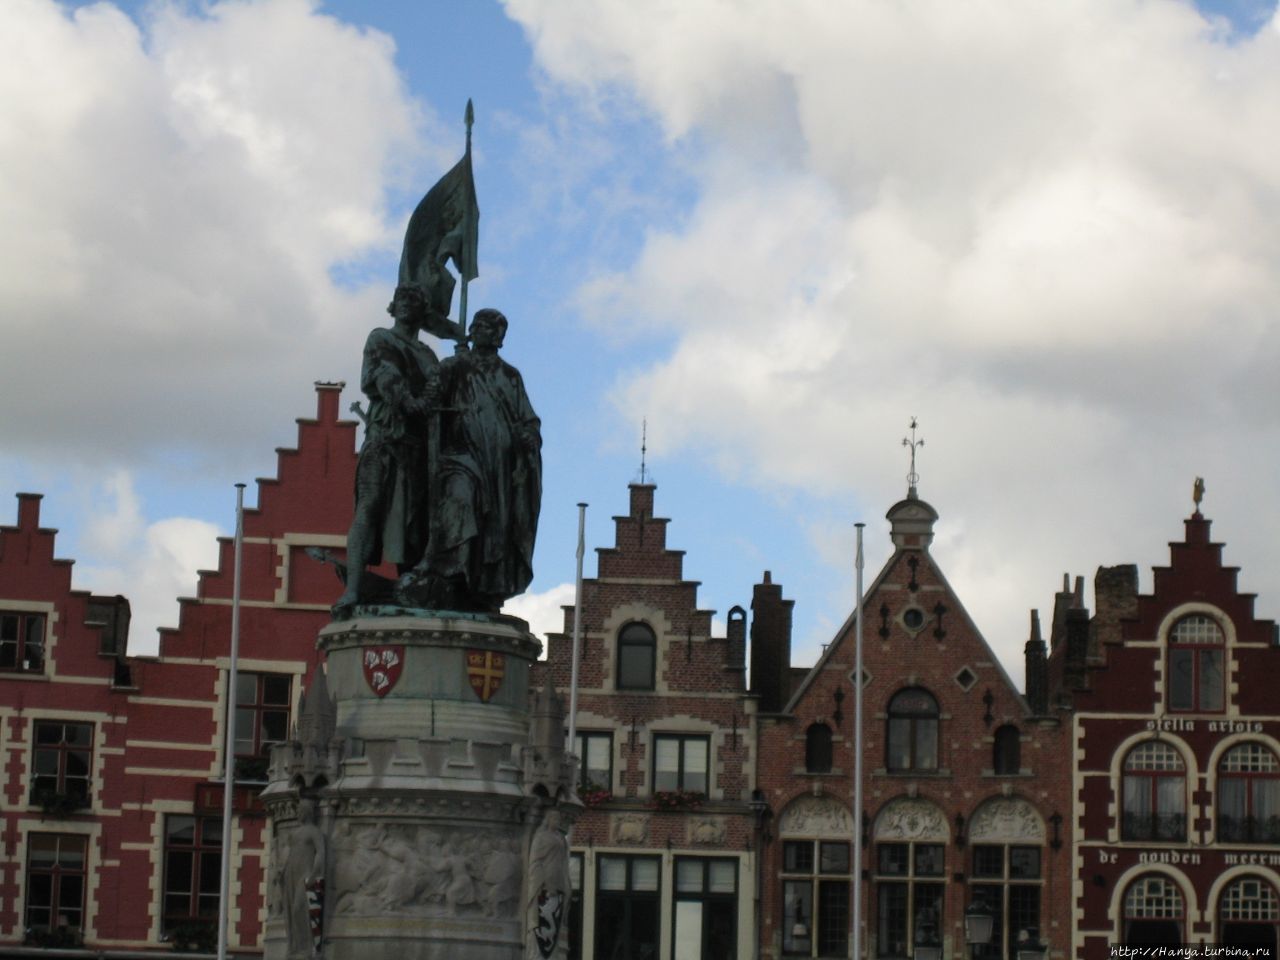 Памятник Яну Брейделю (мяснику) и Питеру де Конинку (ткачу) на Рыночной площади в Брюгге Брюгге, Бельгия